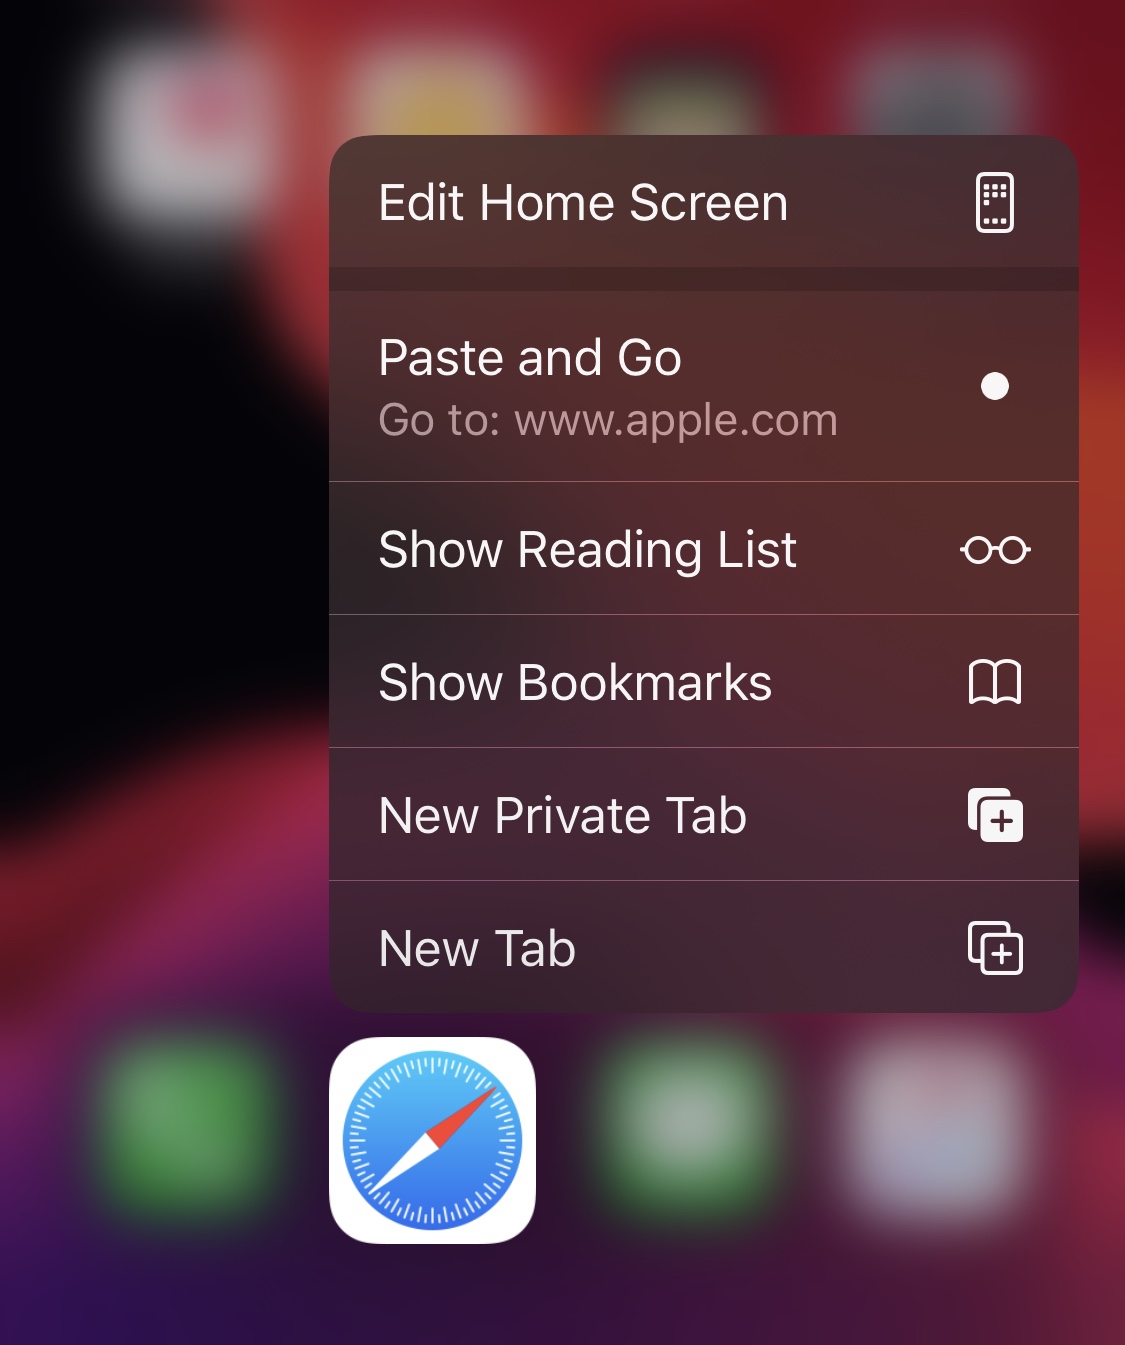 PasteAndGo2 добавляет новую функцию поиска в меню Haptic Touch на iOS 79